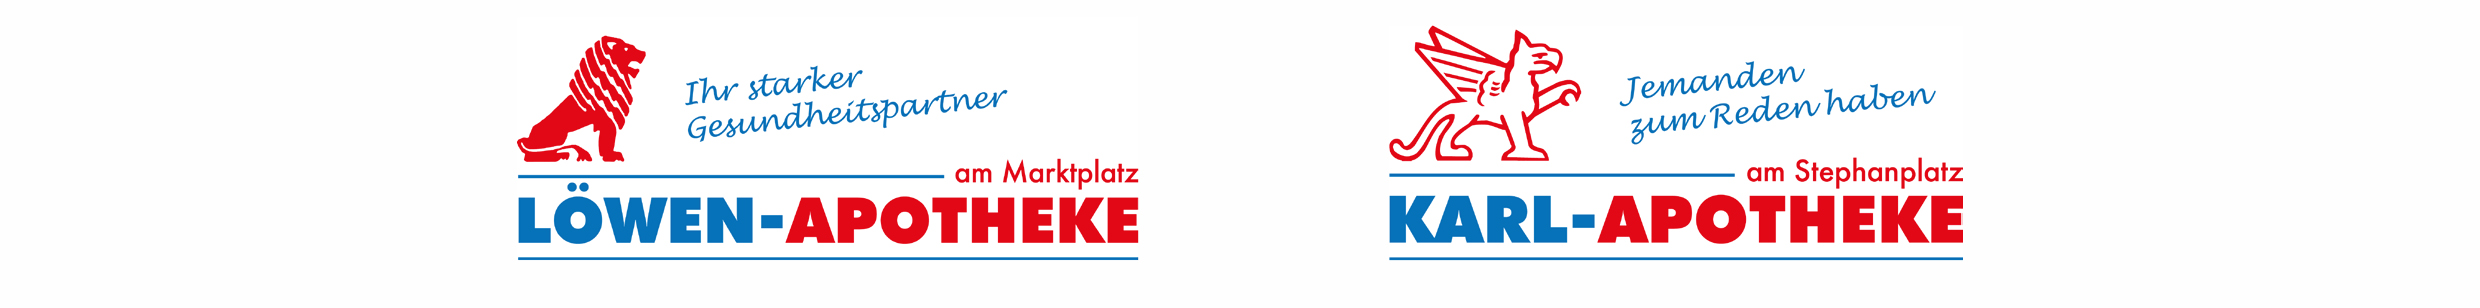 Apotheken-Logos